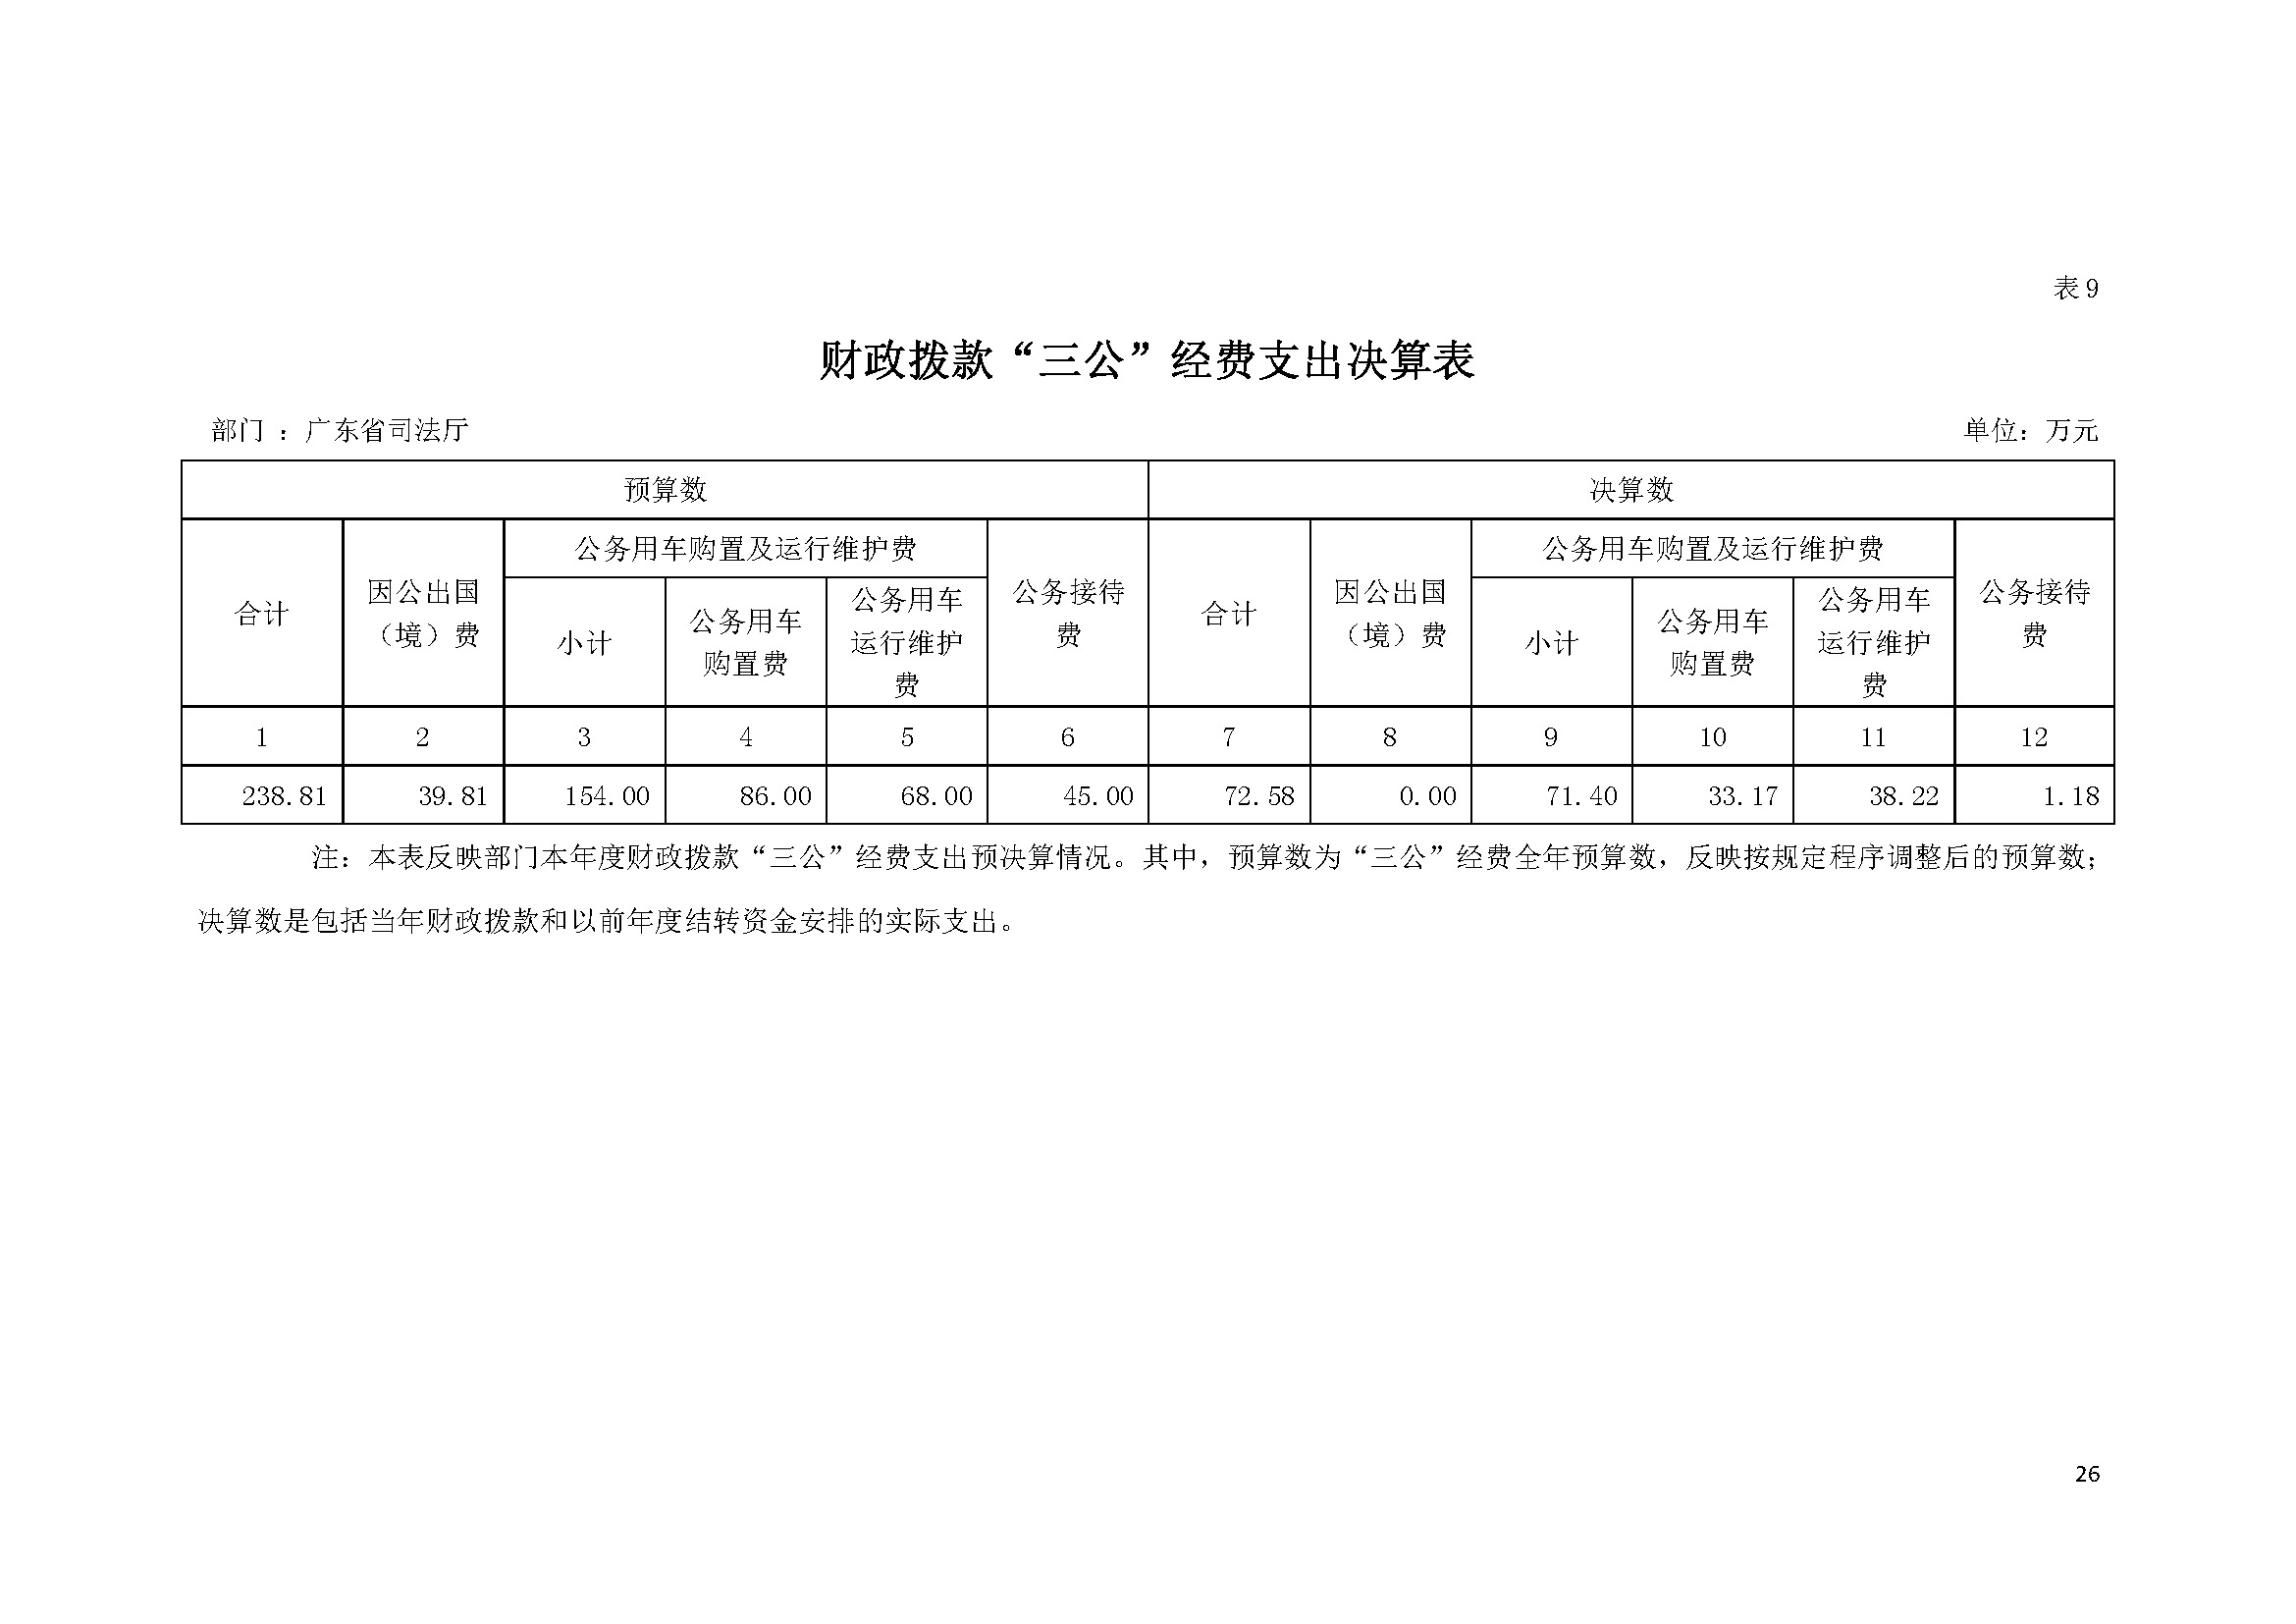 2022年度广东省司法厅部门决算__页面_26.jpg